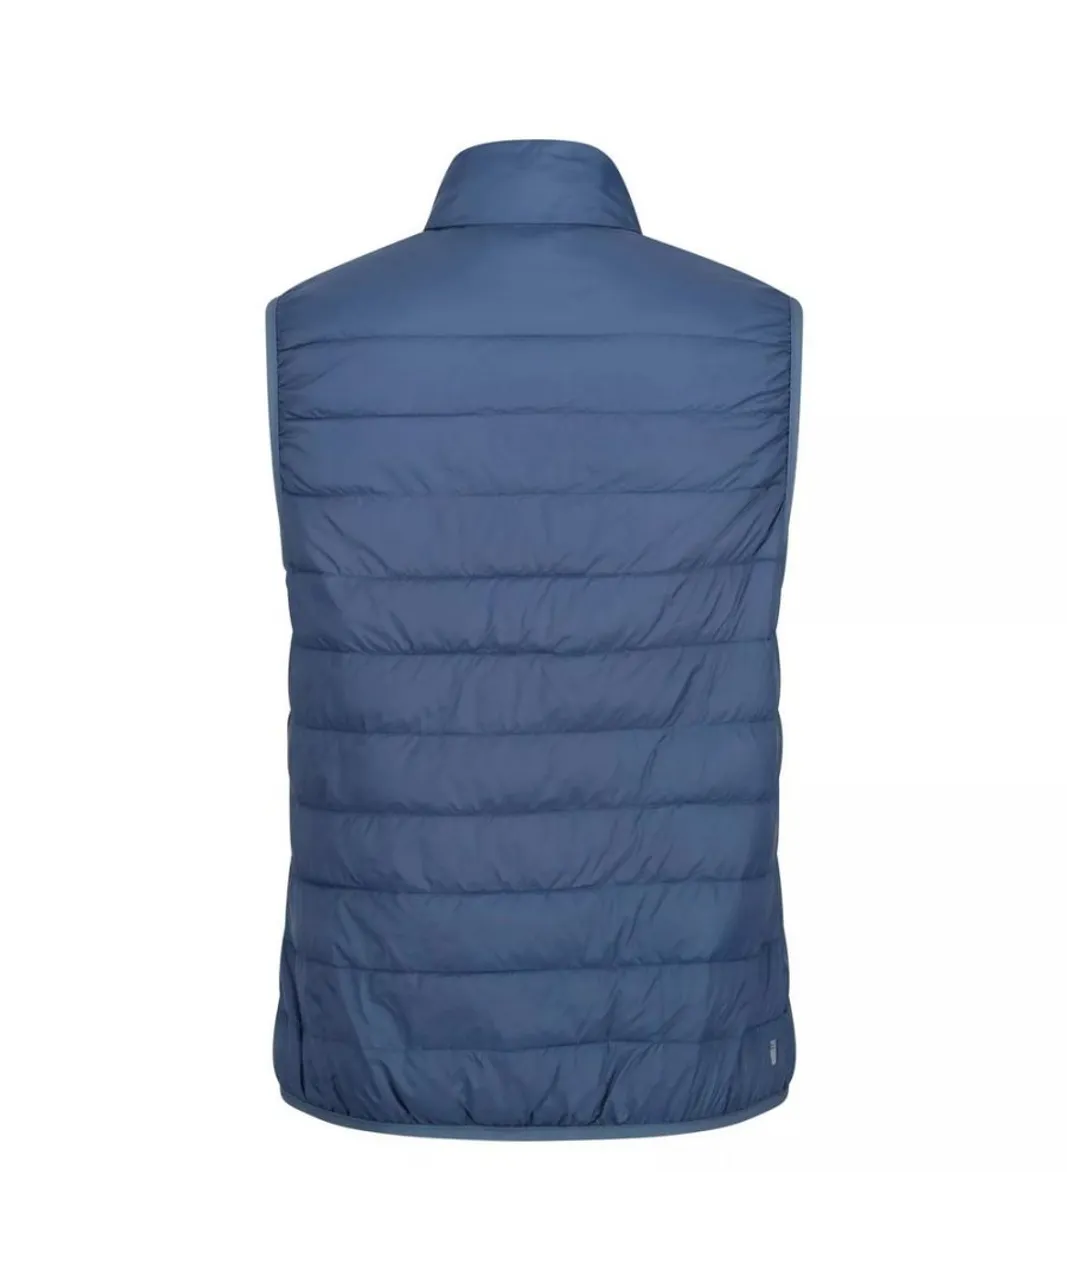 Regatta Womens/Ladies Hillpack Insulated Body Warmer (Dark Denim) - Blue